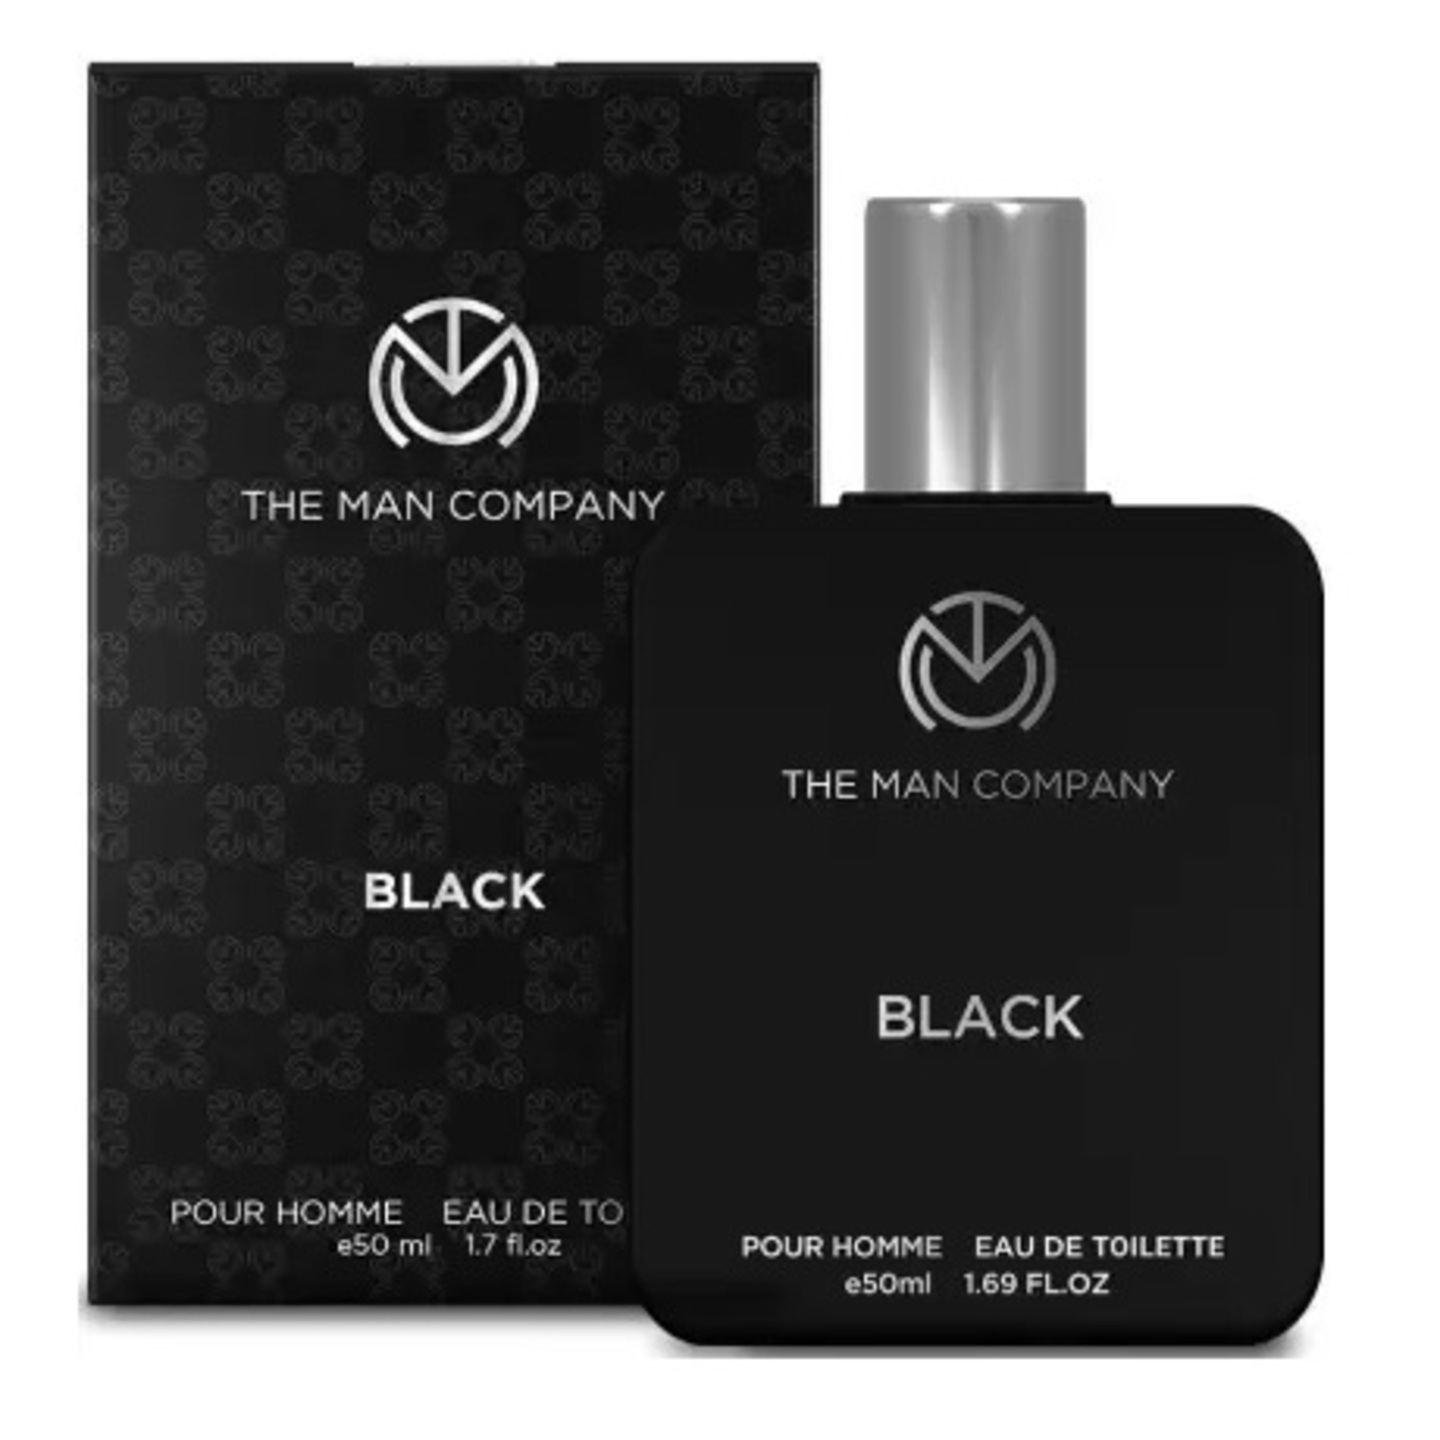 THE MAN COMPANY Black perfume Eau de Toilette - 50 ml  For Men